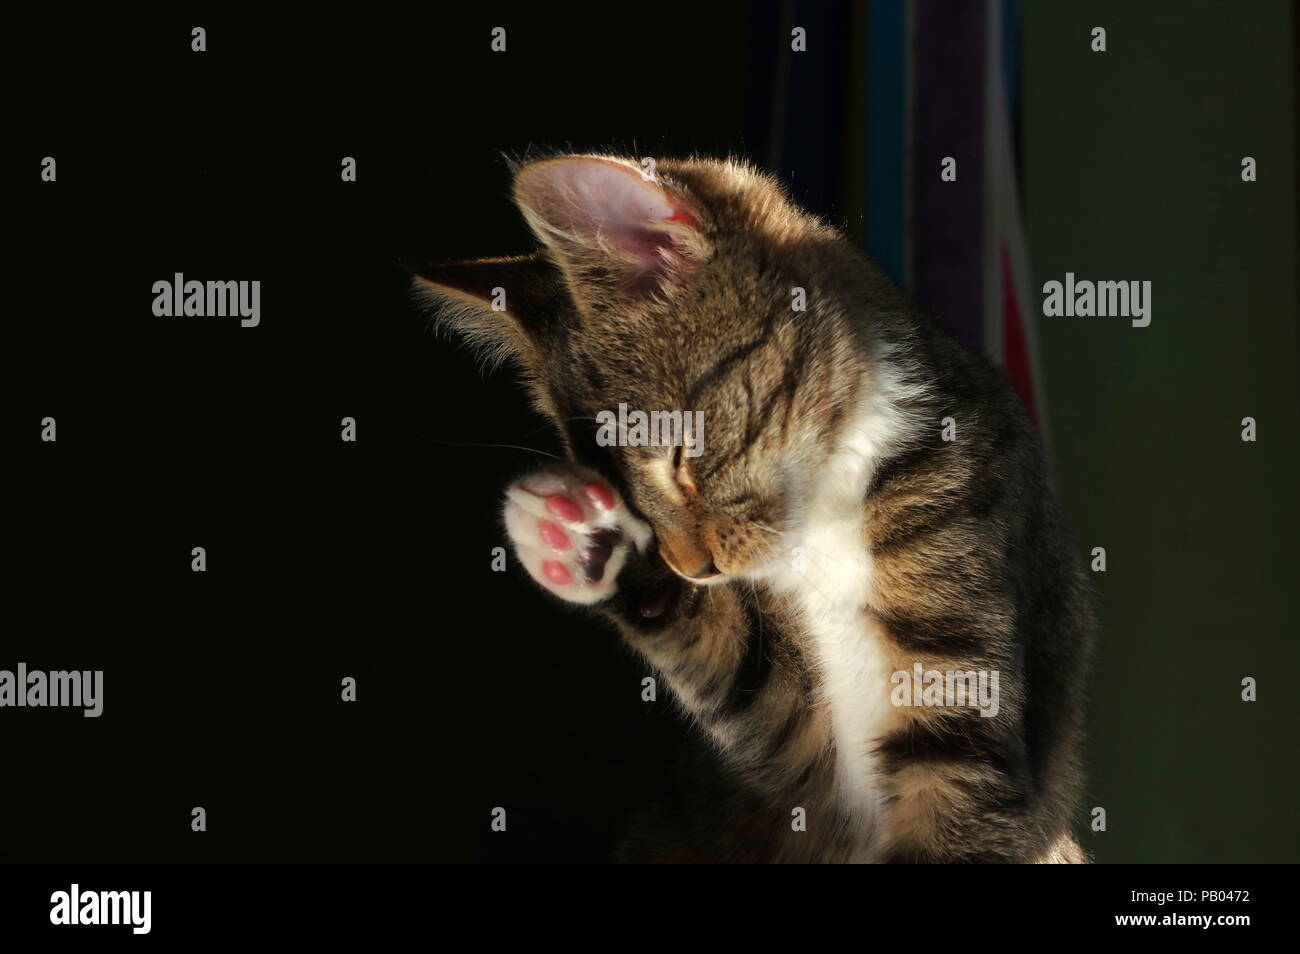 Tabby gattino e lo sfondo scuro Foto Stock